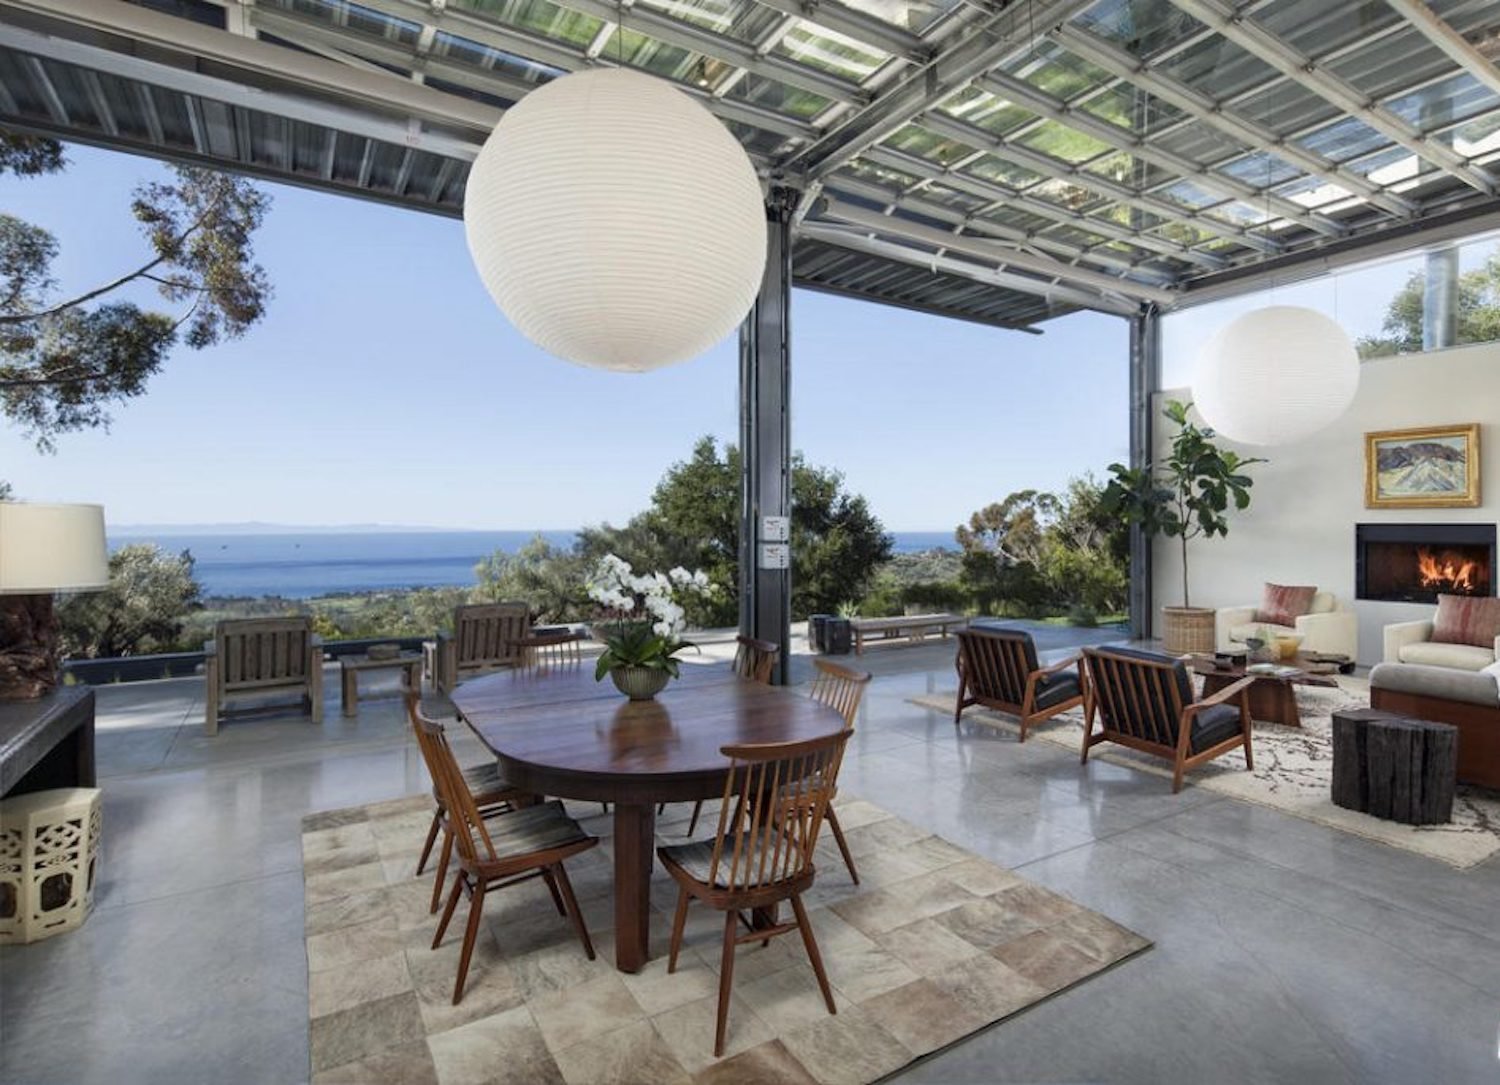 Casa de la actriz Natalie Portman en Montecito comedor abierto